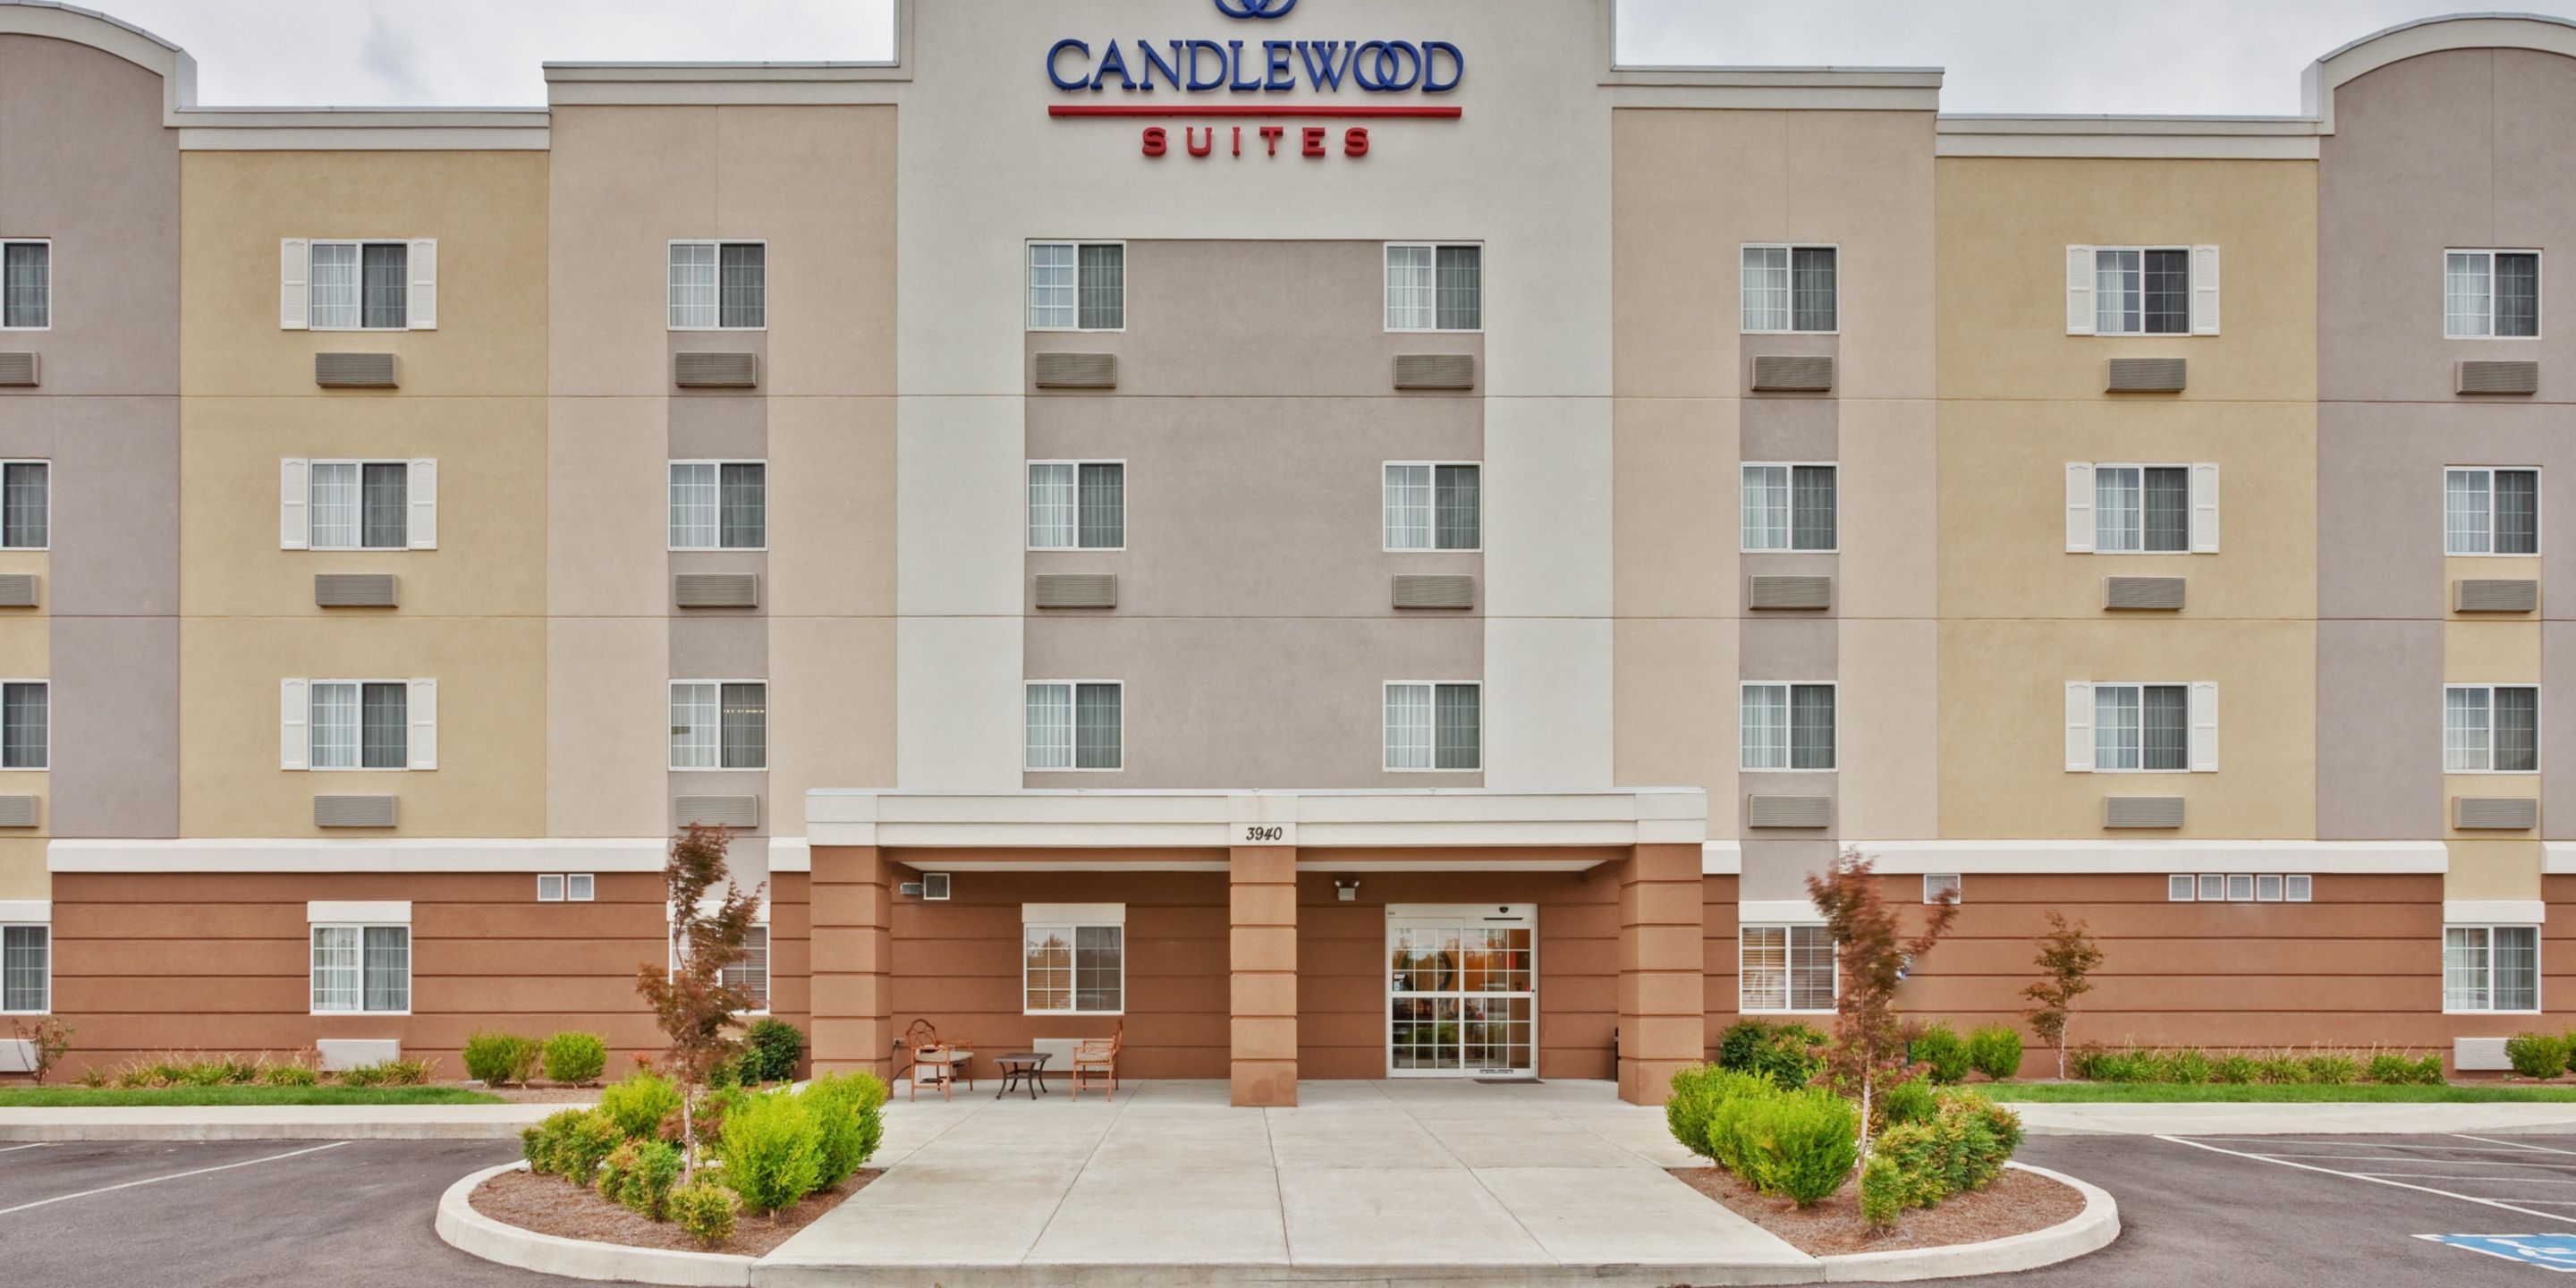 Photo of Candlewood Suites Paducah, Paducah, KY